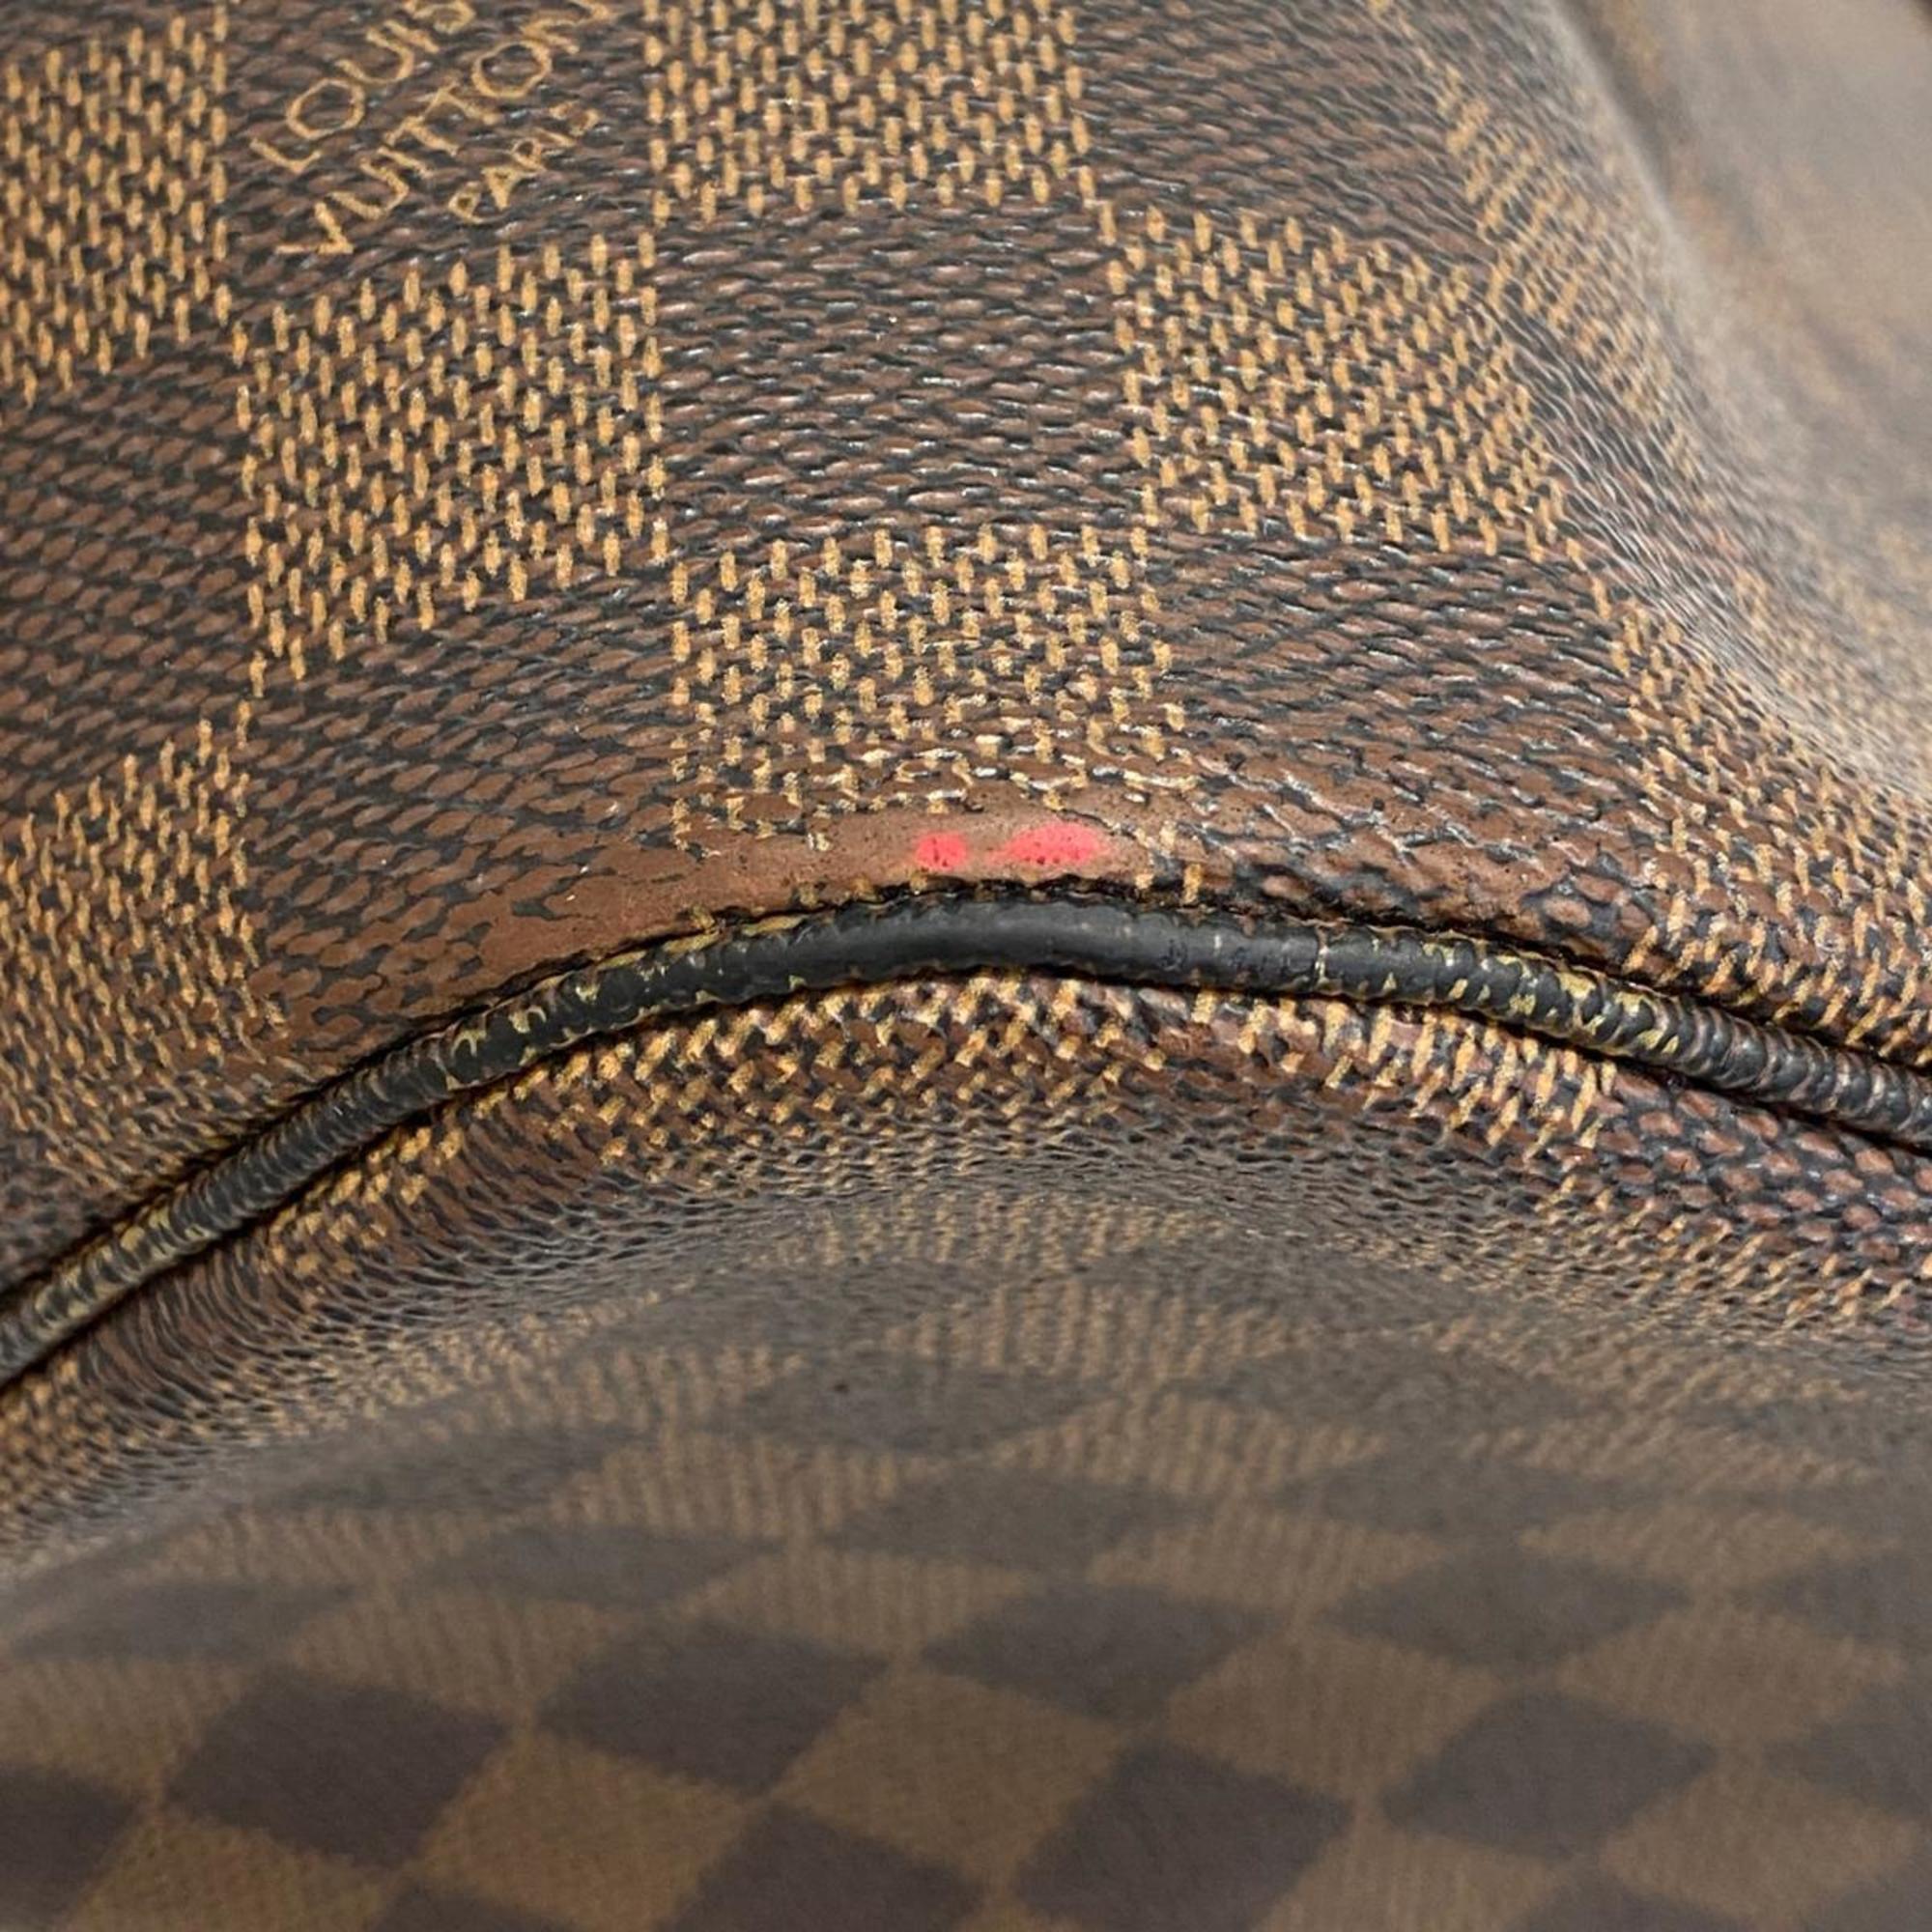 Louis Vuitton Tote Bag Damier Neverfull MM N41358 Ebene Women's